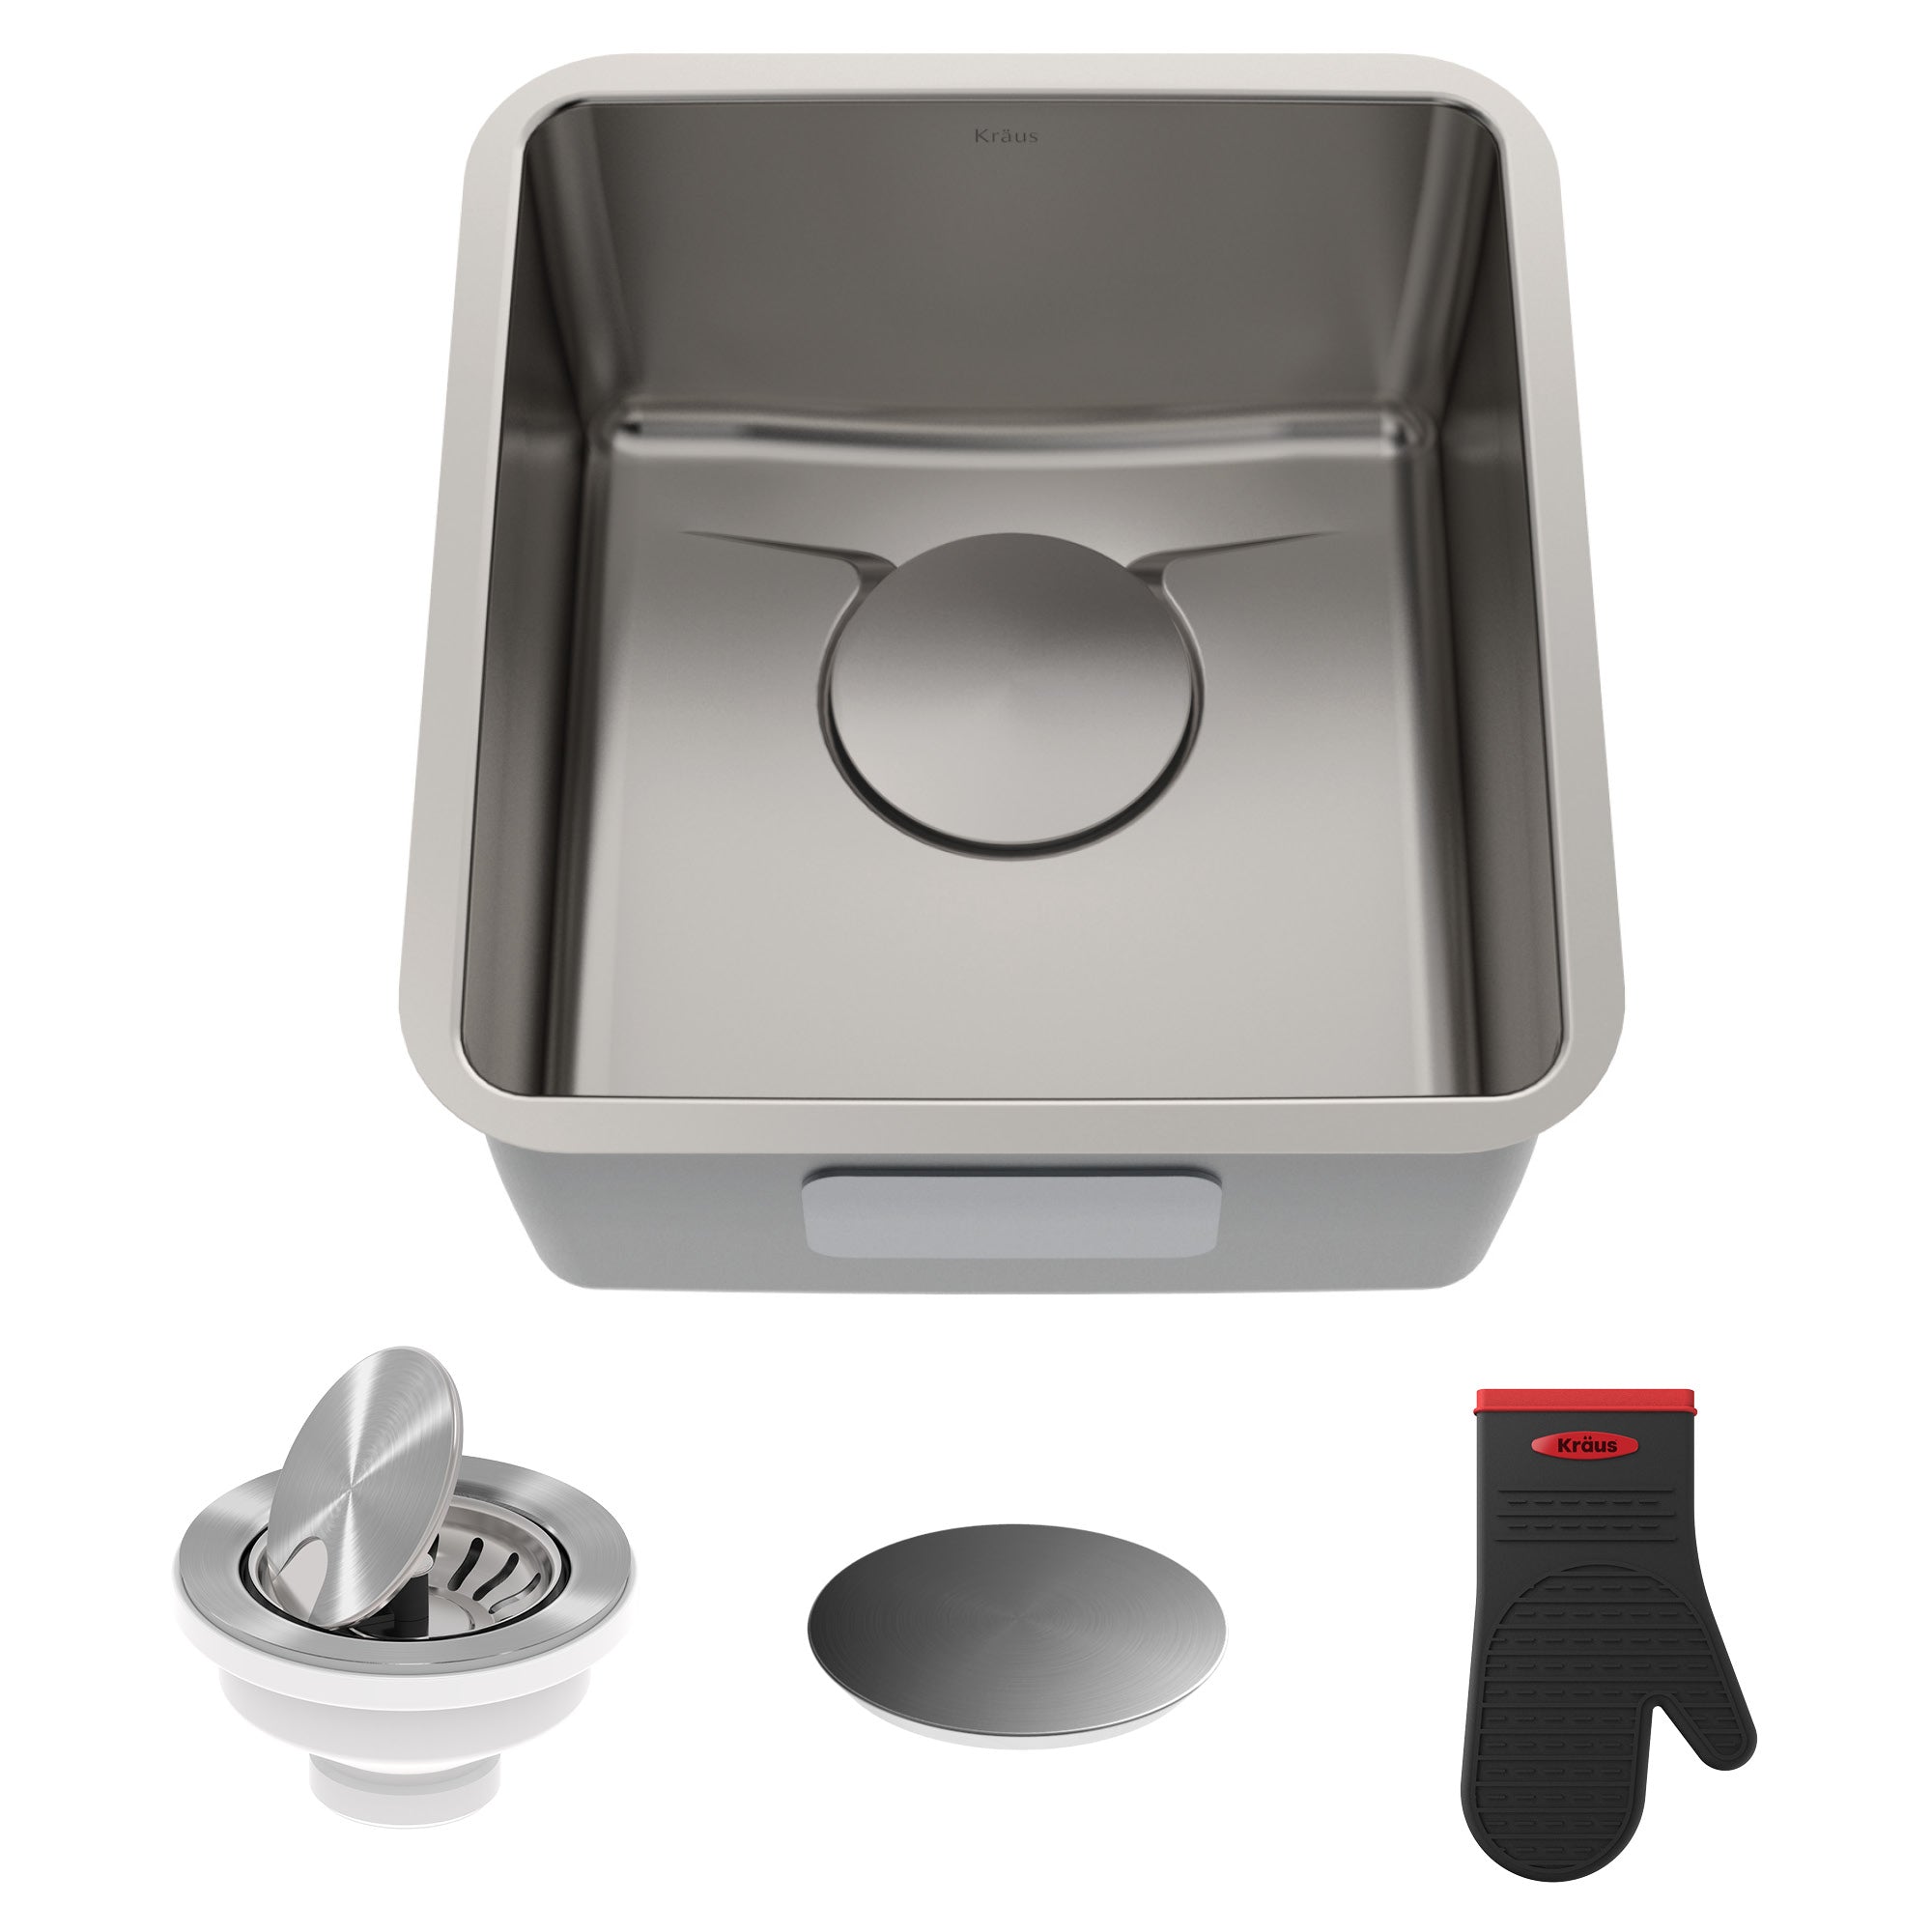 KRAUS Dex 17" Undermount16 Gauge Stainless Steel Kitchen Sink with VersiDrain-Kitchen Sinks-DirectSinks